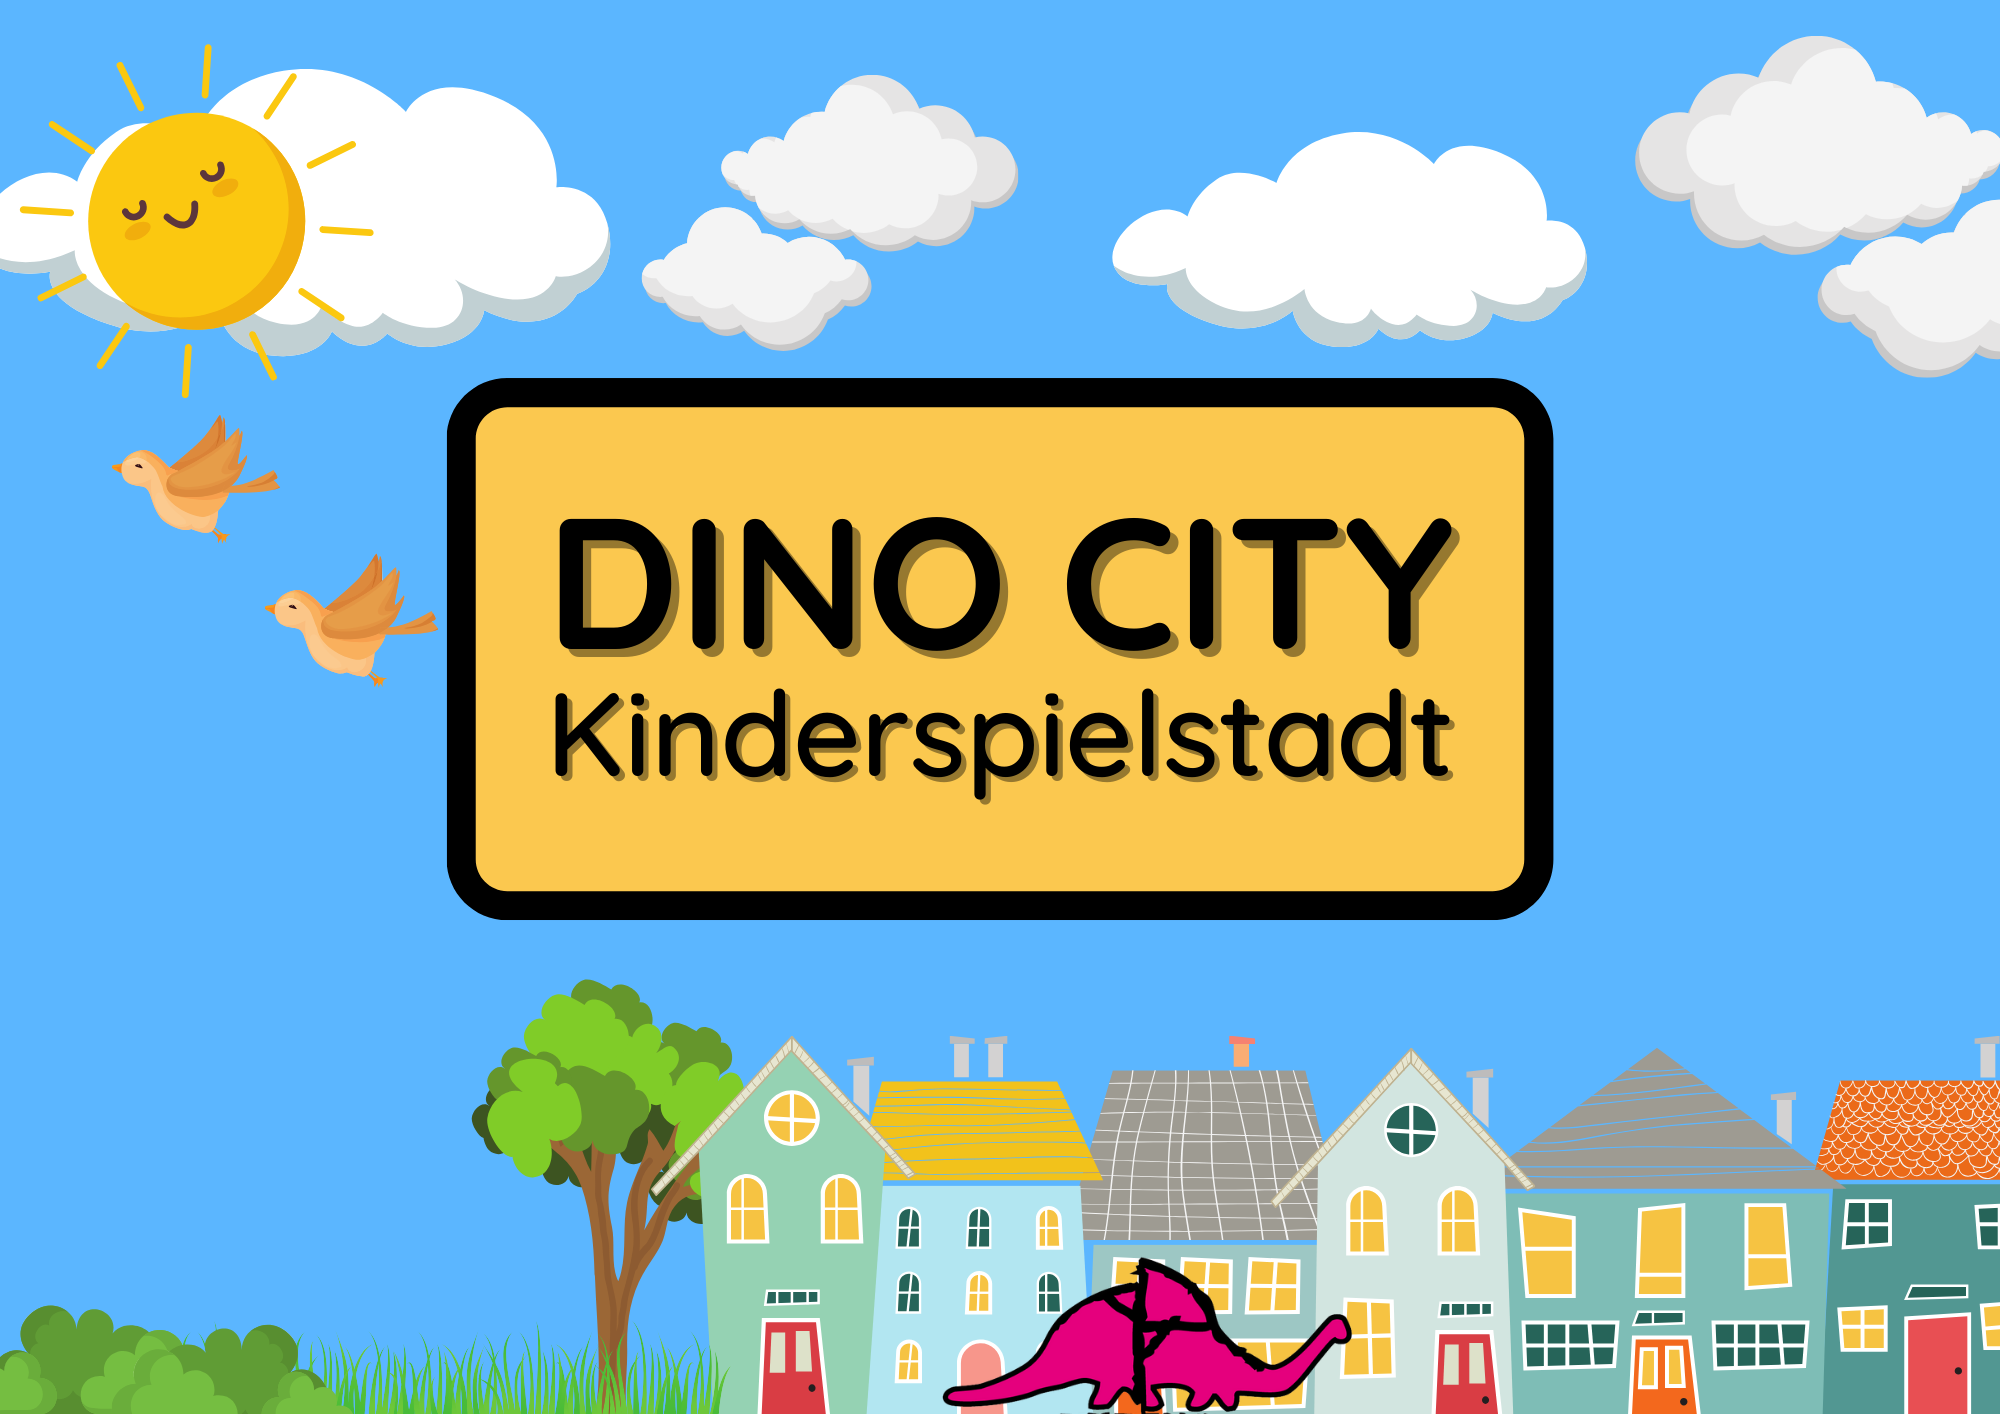 Kinderspielstadt Dino City